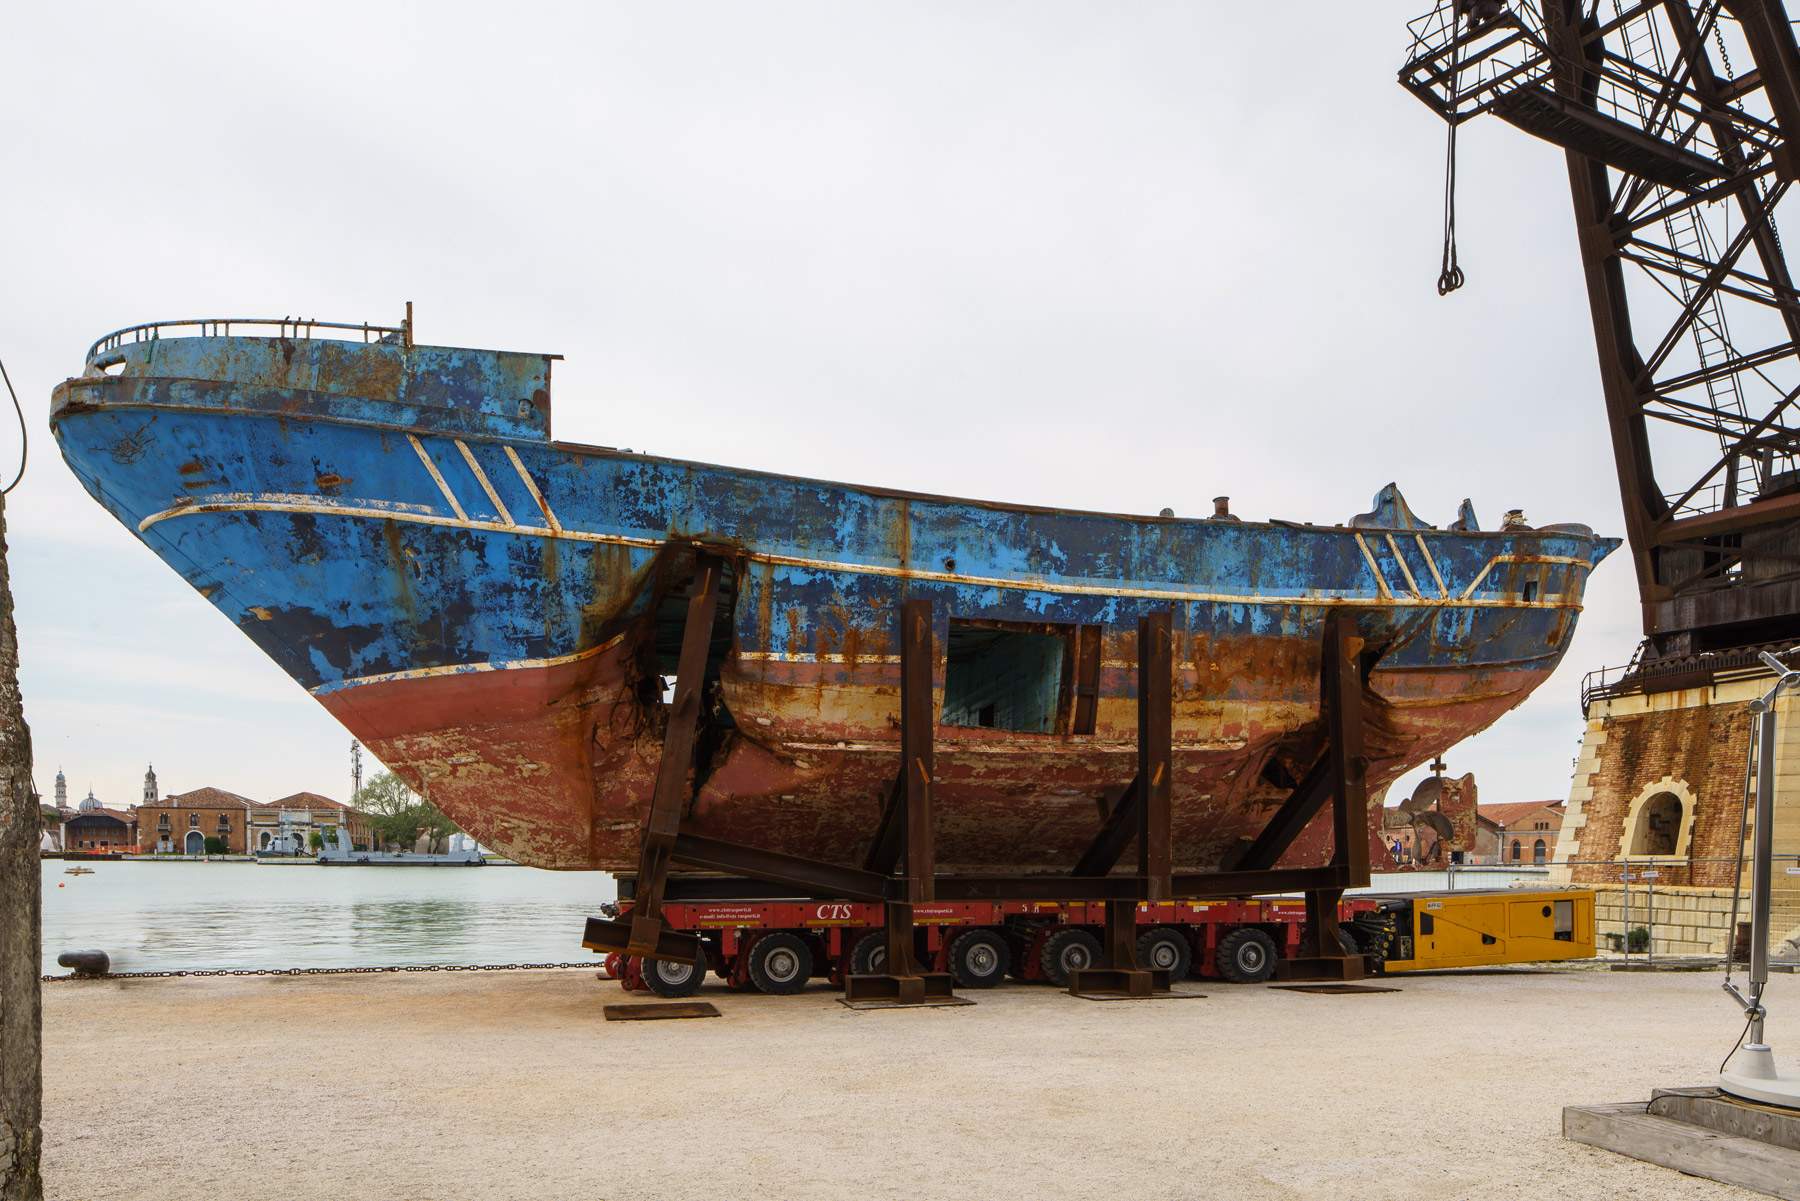 Torna in Sicilia il relitto del naufragio dei migranti esposto alla Biennale di Venezia 2019